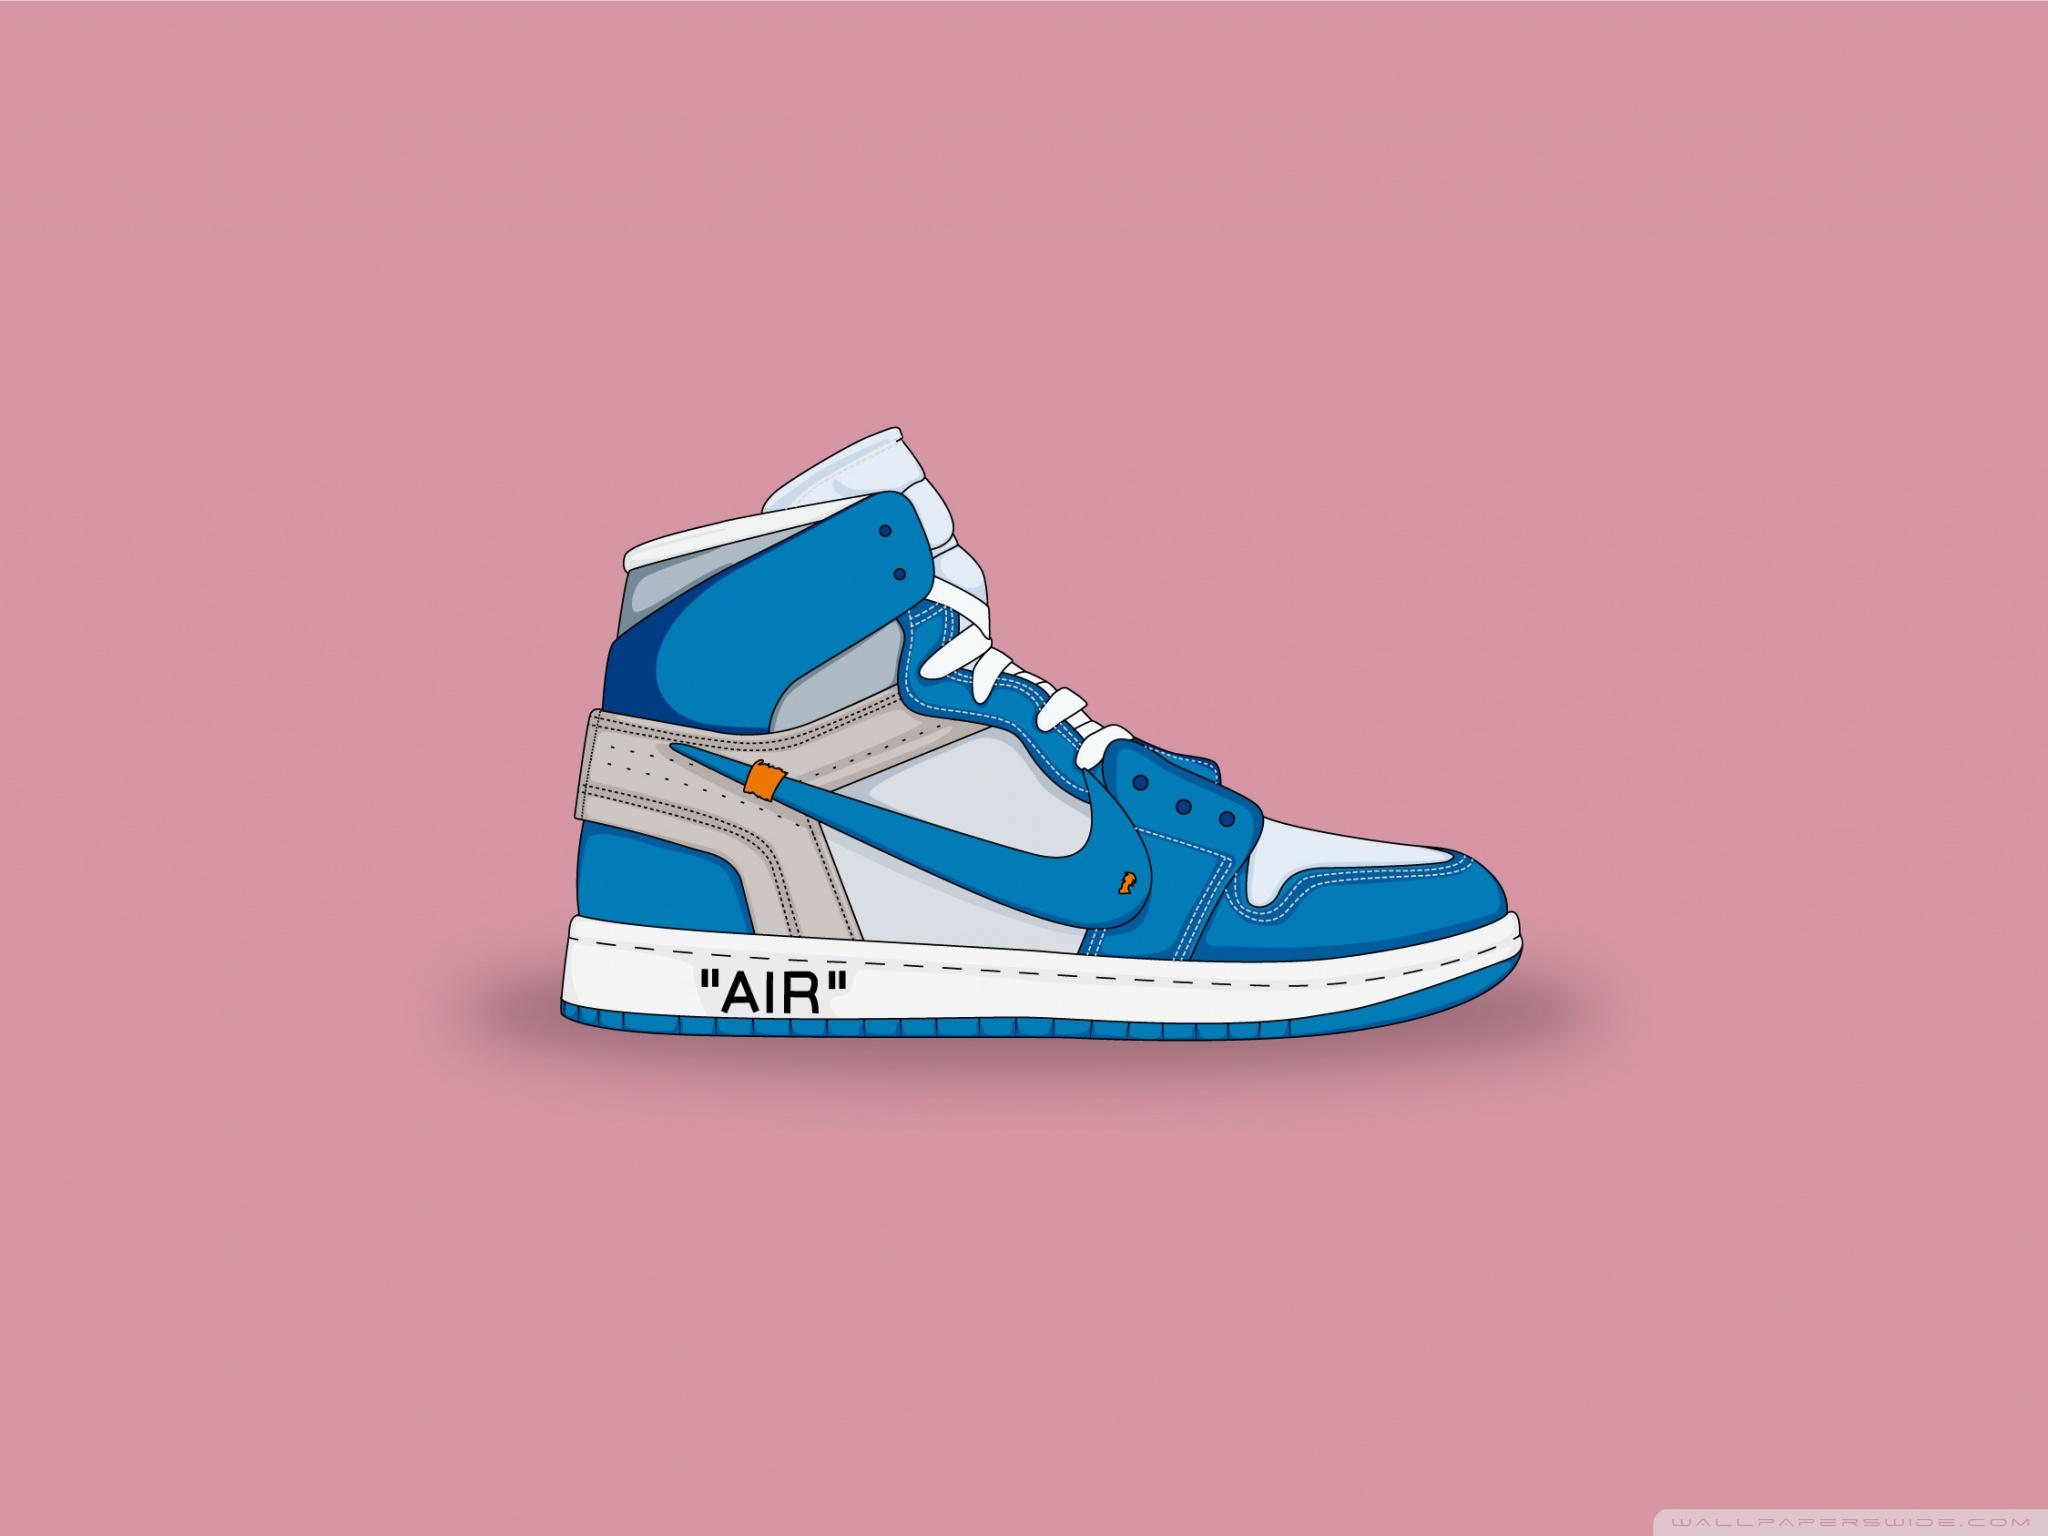 Nike Air Jordan Shoe Wallpapers - Top Free Nike Air Jordan Shoe ...